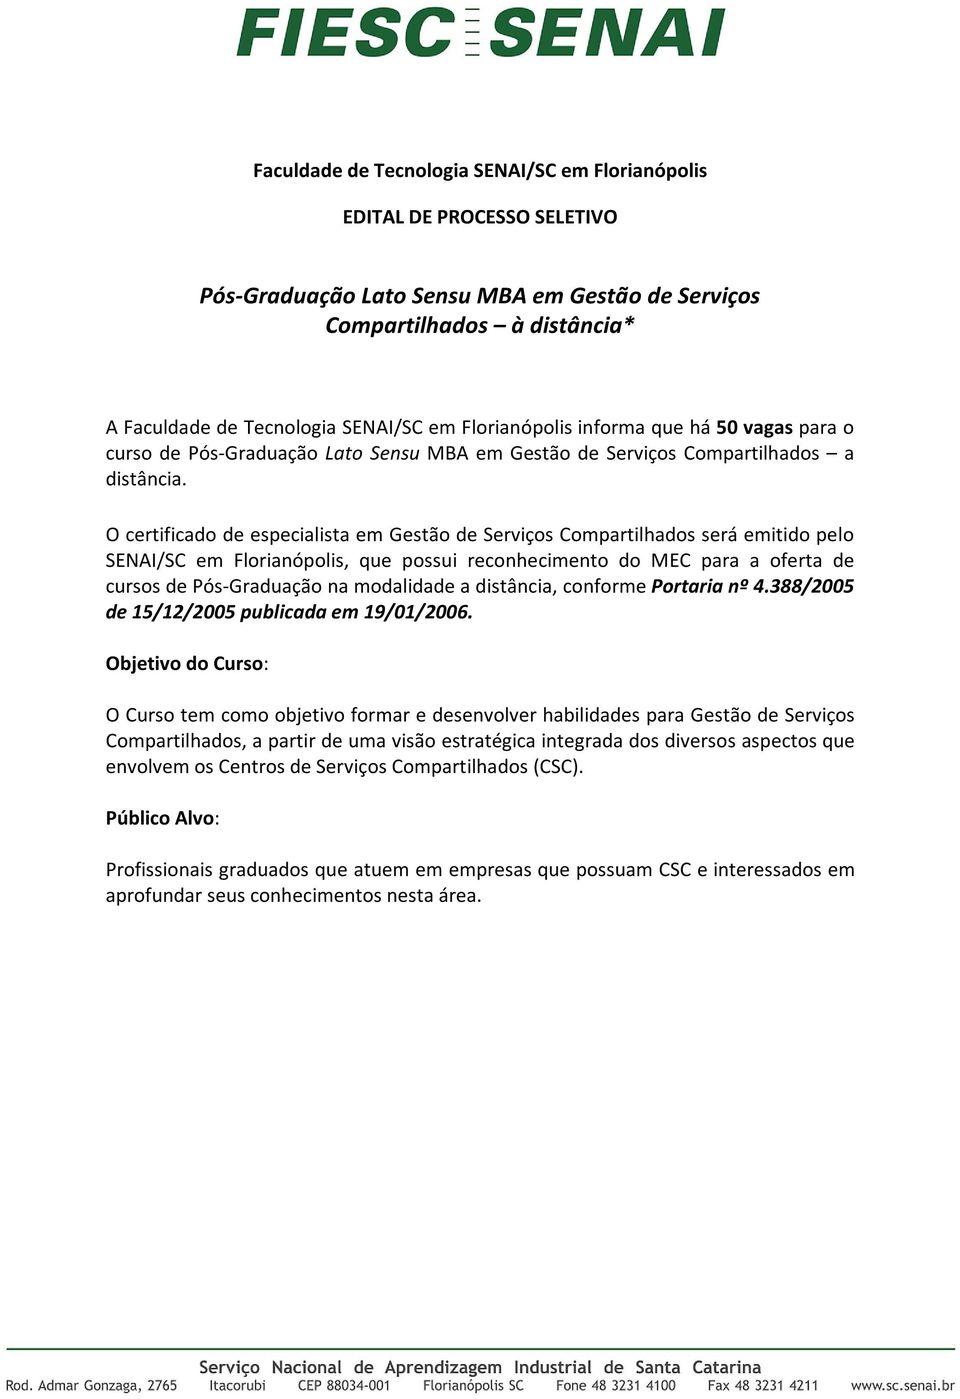 O certificado de especialista em Gestão de Serviços Compartilhados será emitido pelo SENAI/SC em Florianópolis, que possui reconhecimento do MEC para a oferta de cursos de Pós-Graduação na modalidade